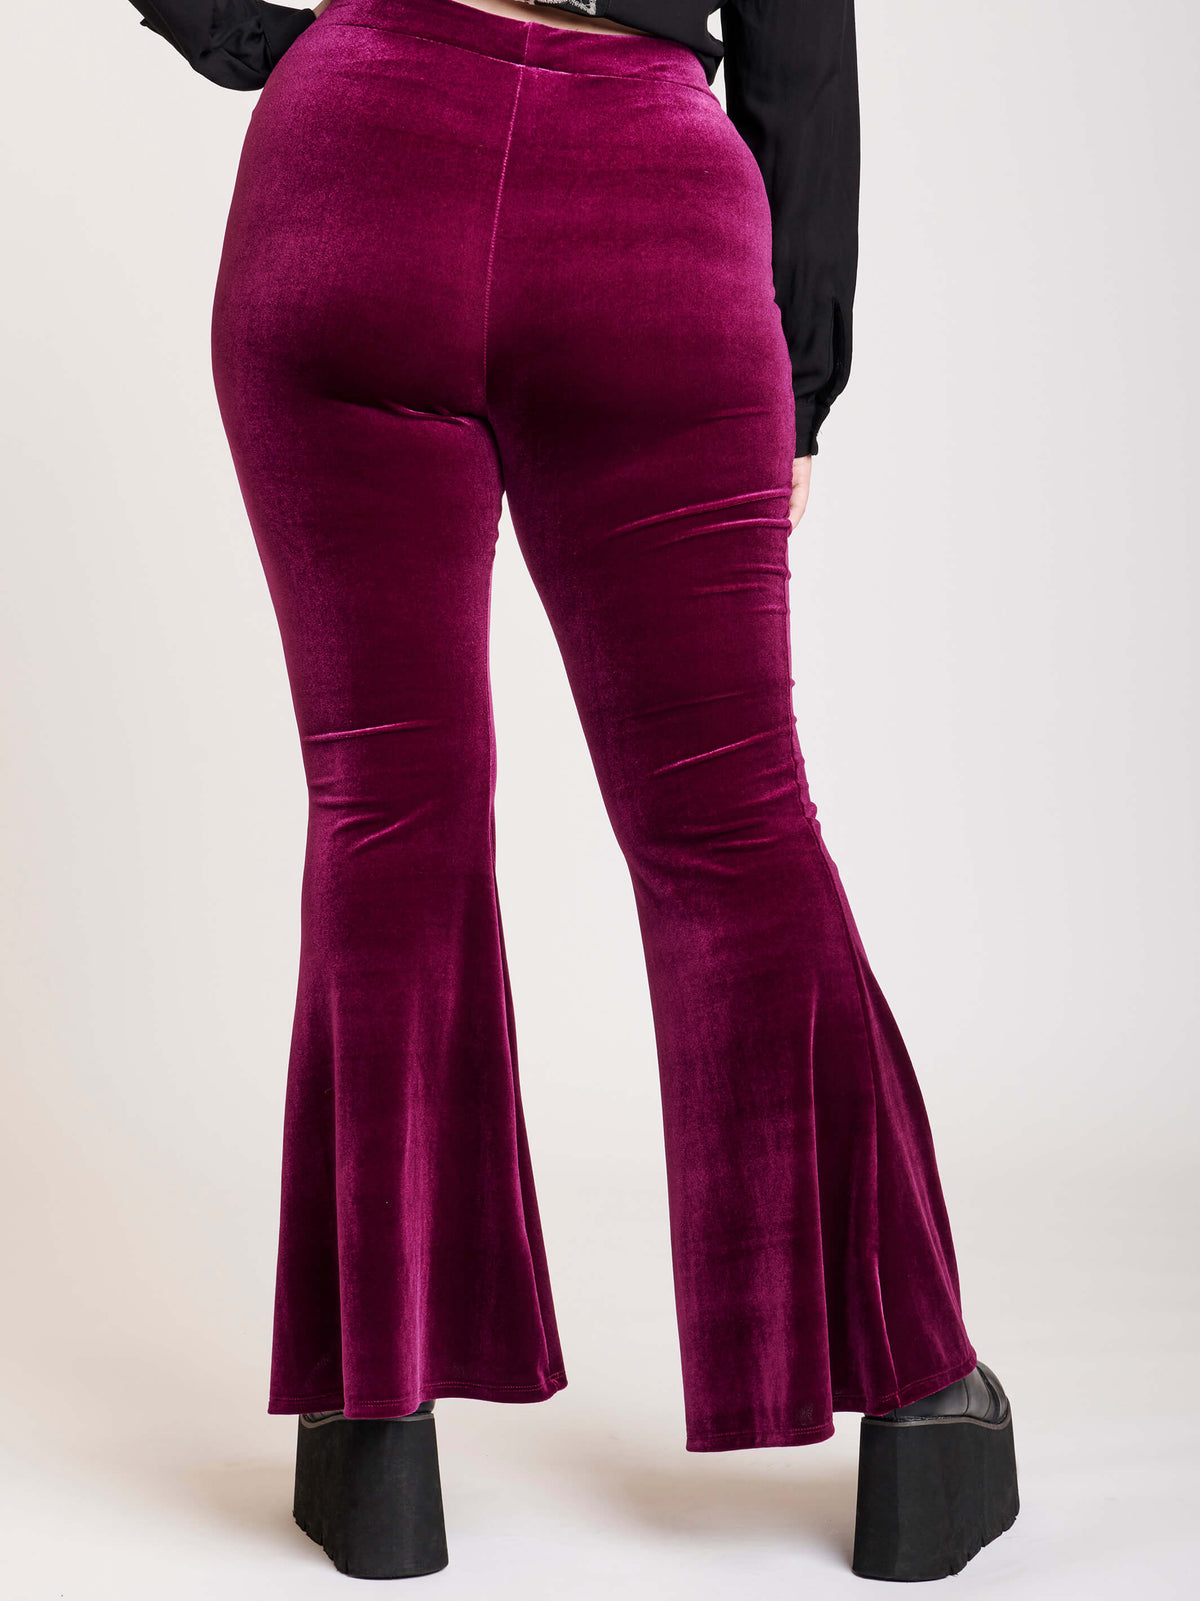 burgundy velvet flared legging